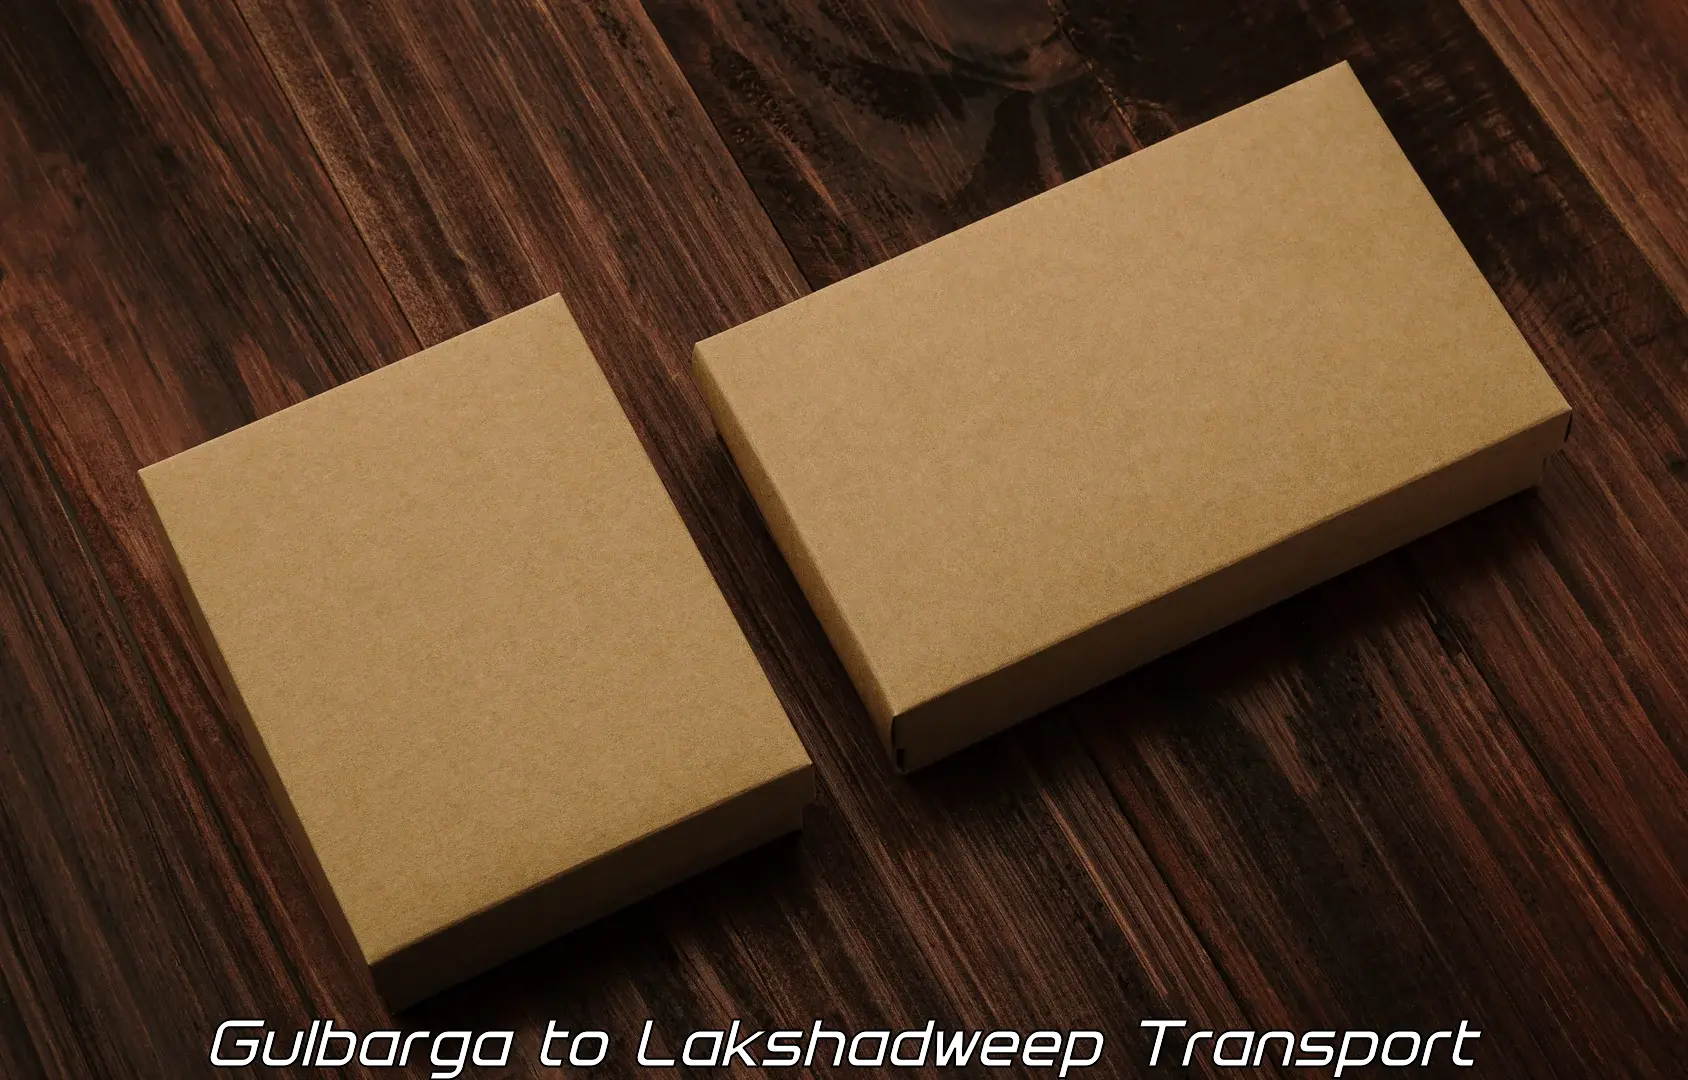 Bike transport service Gulbarga to Lakshadweep